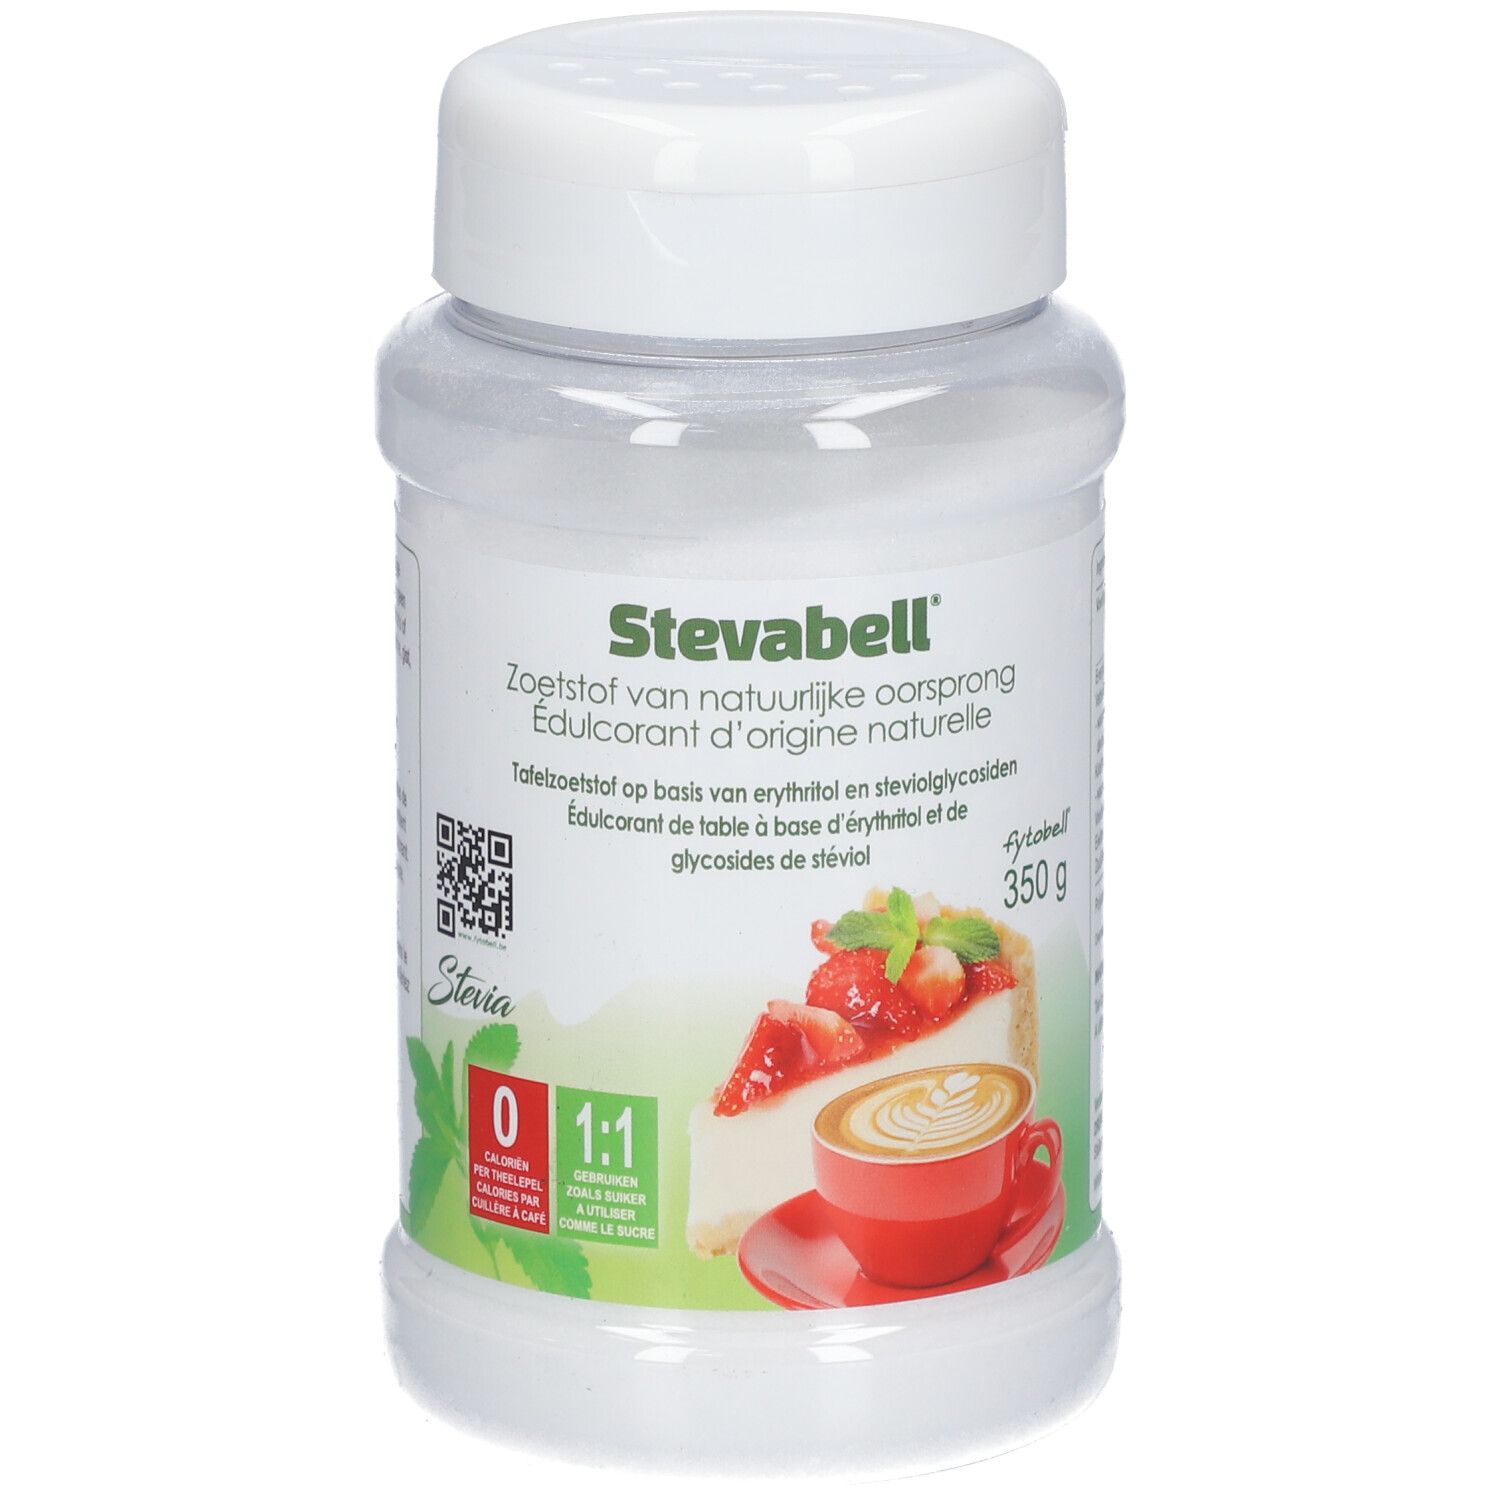 Fytobell® Stevabell